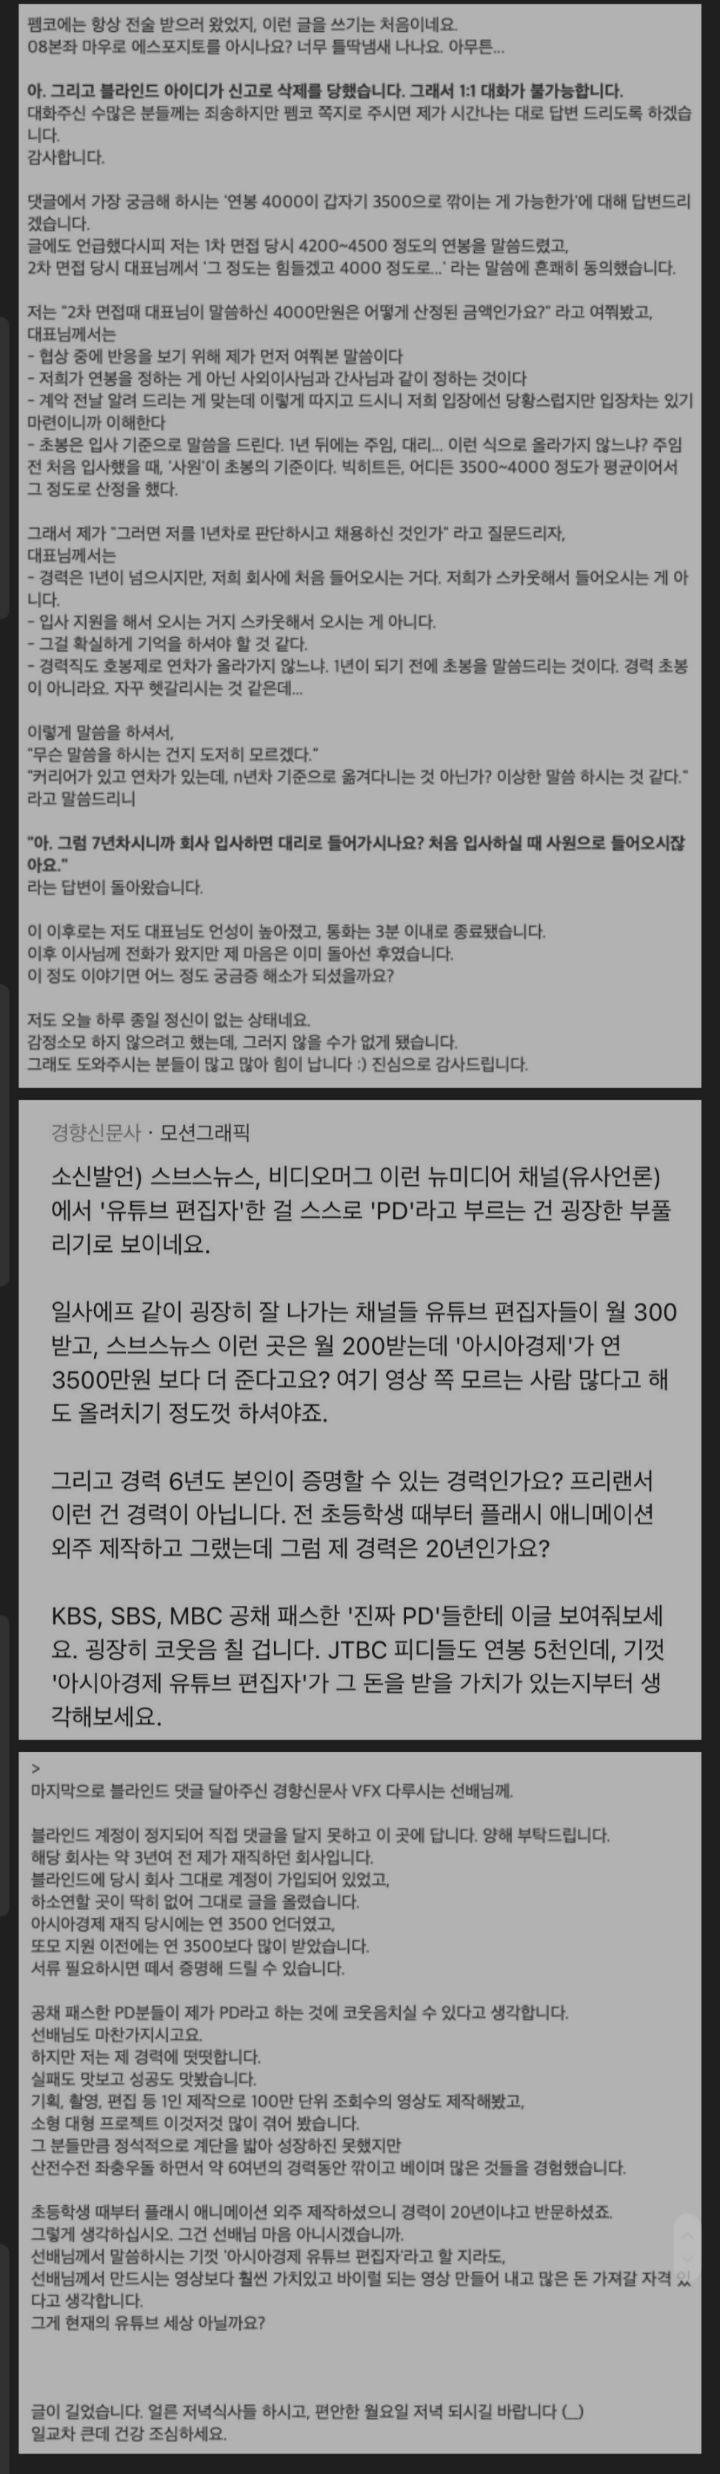 연봉 500깍인 pd블라인드 삭제당해서 옮김 | 인스티즈